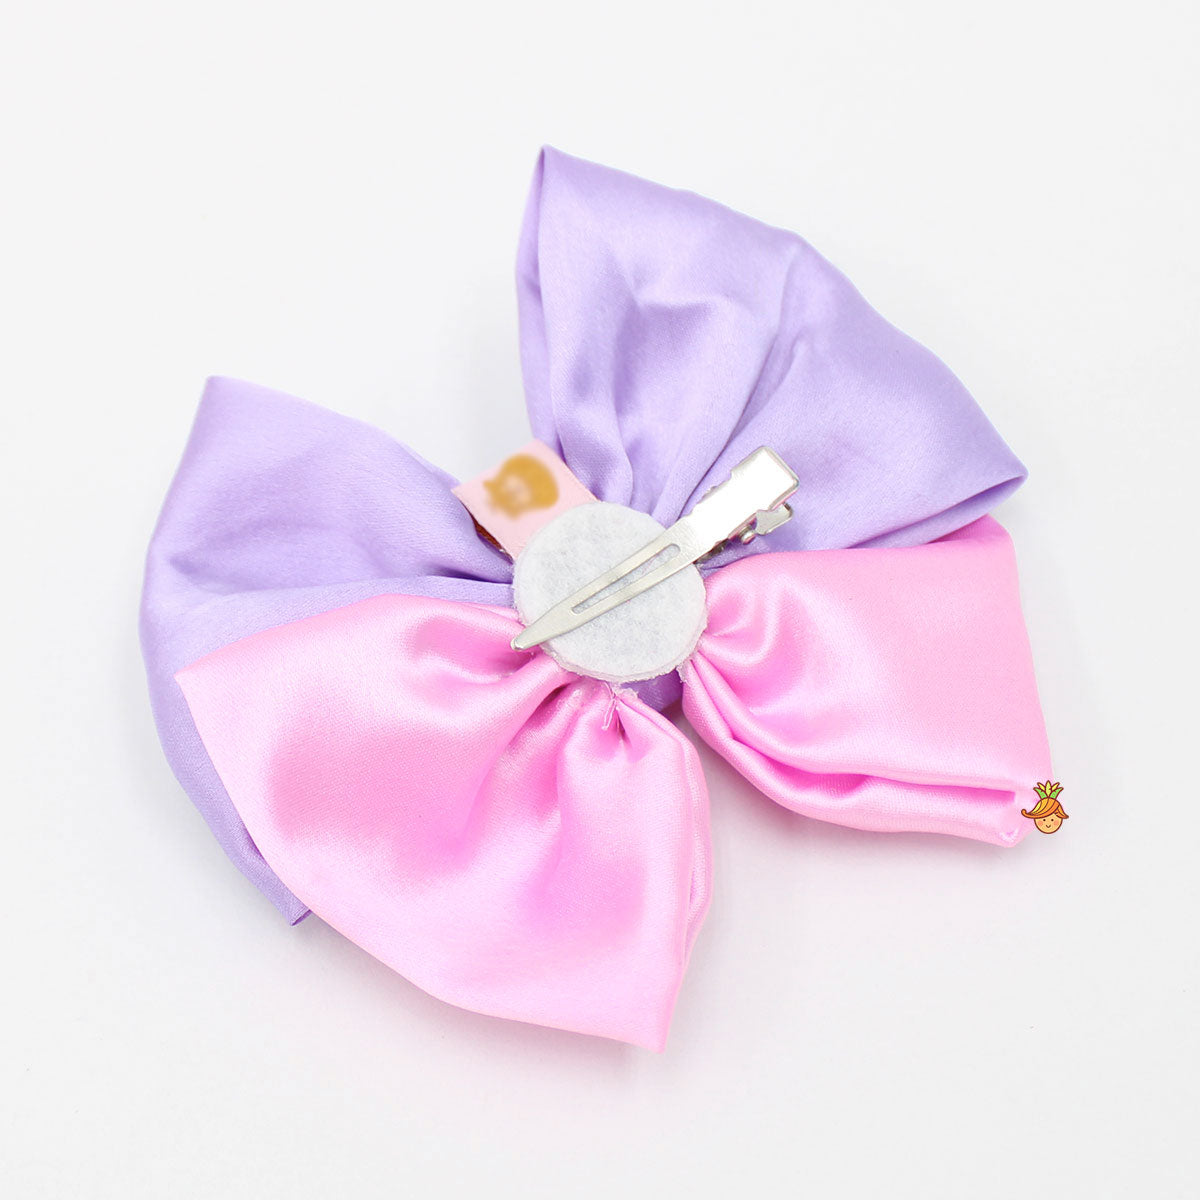 Lavender And Pink Dual Tone Cute Hair Clip